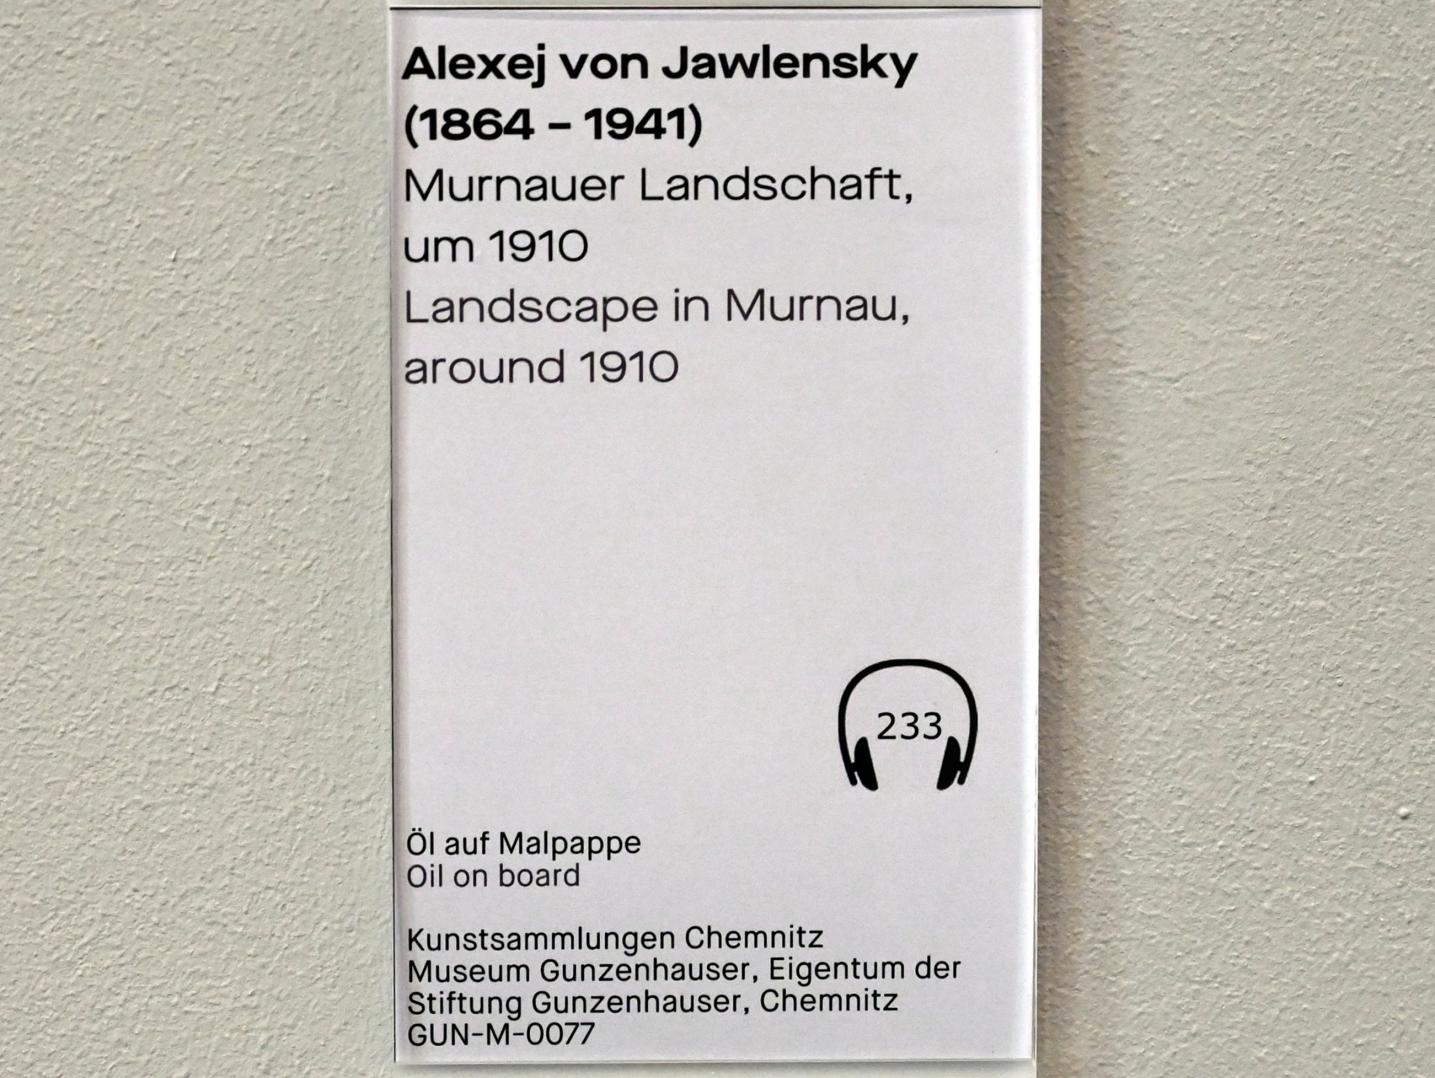 Alexej von Jawlensky (1893–1938), Murnauer Landschaft, Chemnitz, Museum Gunzenhauser, Saal 3.6 - Der blaue Reiter, um 1910, Bild 2/2